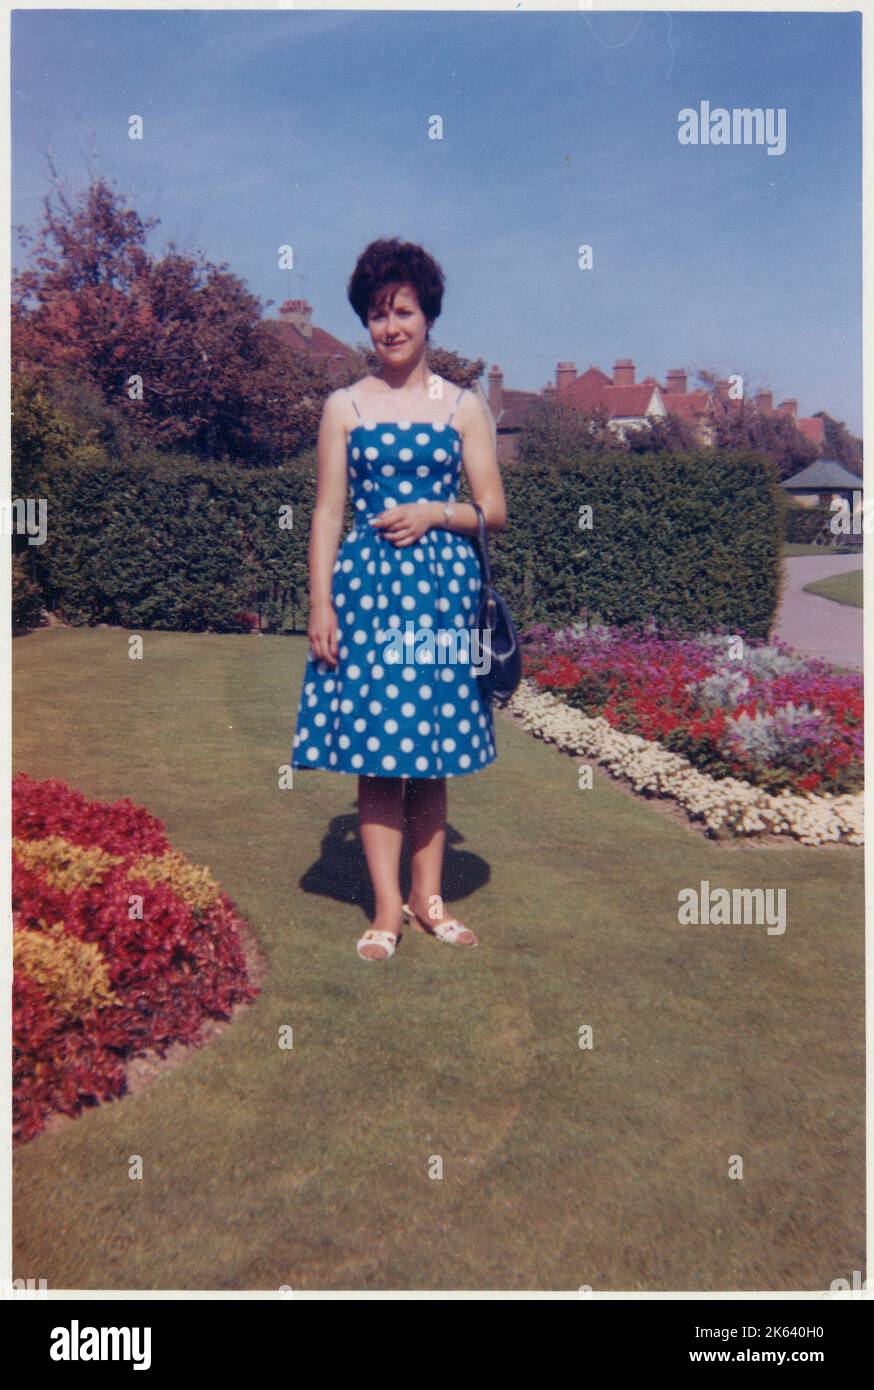 Eine junge Dame, die zwischen zwei wunderschön gepflegten Blumenbeeten in einem gepflegten britischen Vorstadtgarten steht, steht sehr elegant gekleidet in ein blau-weißes Kleid mit Polka-Punkt, ihr Haar modisch gestylt - September 1962. Stockfoto